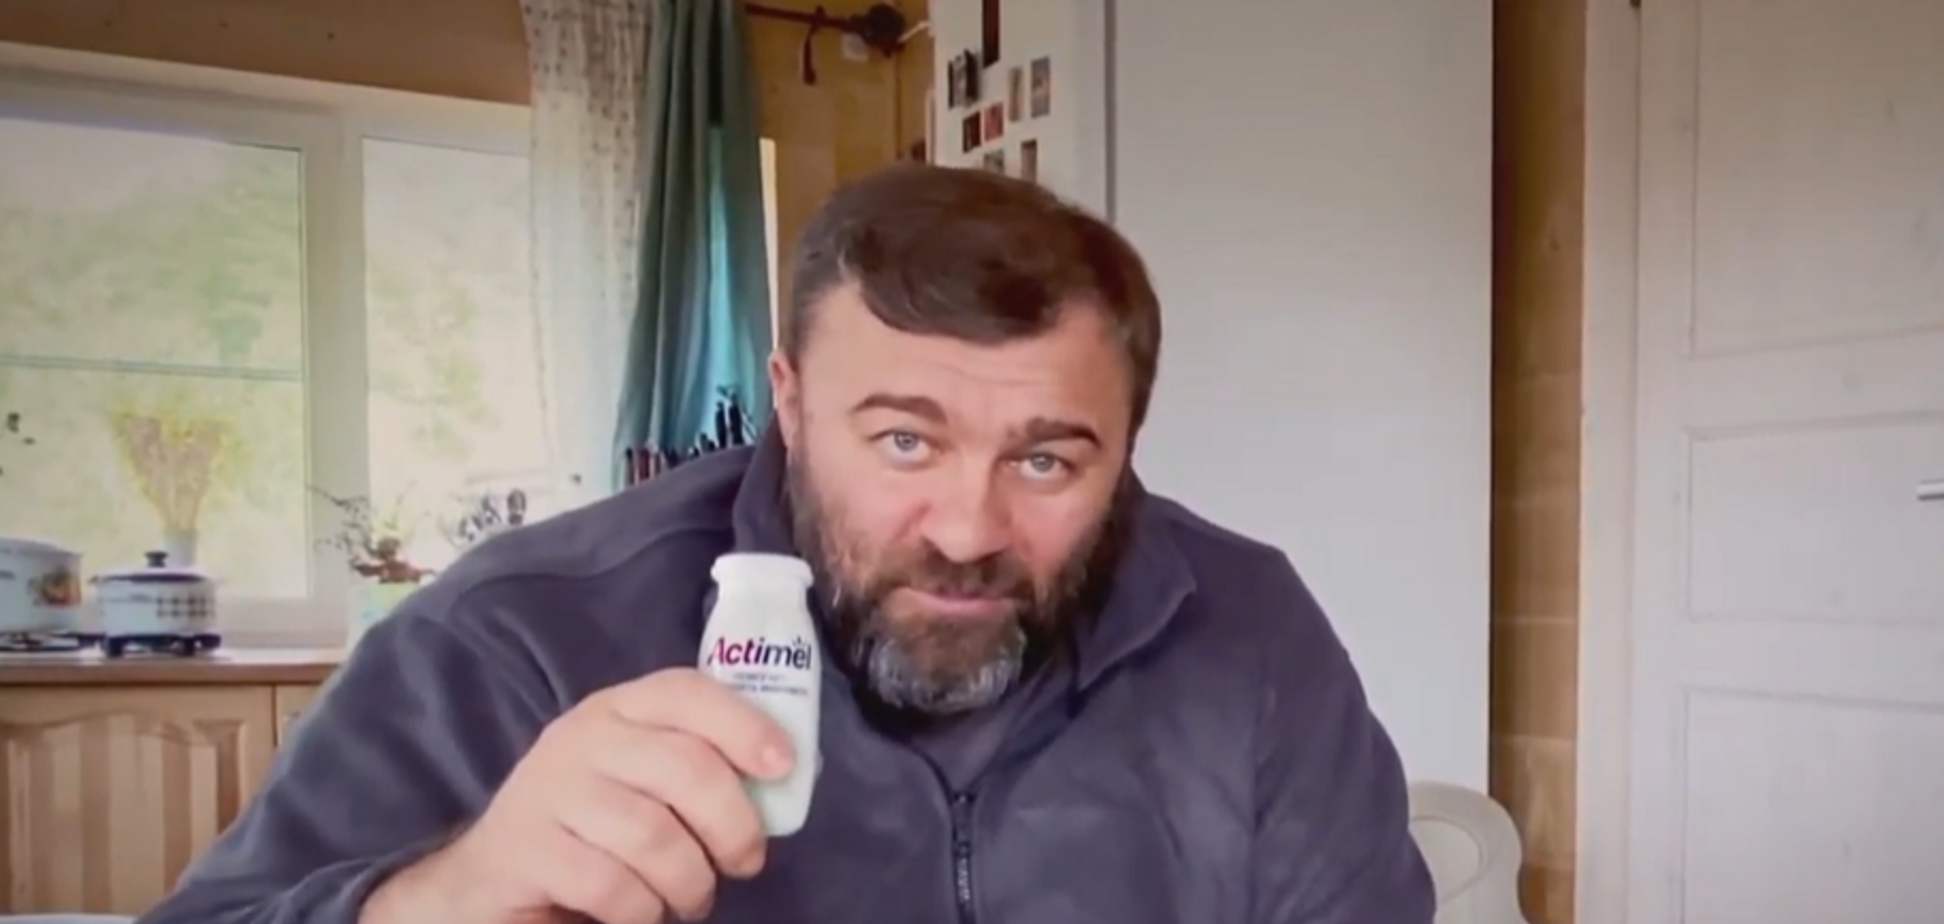 Компанія Danone зняла рекламу з актором Пореченковим, який стріляв по ЗСУ на Донбасі. Відео